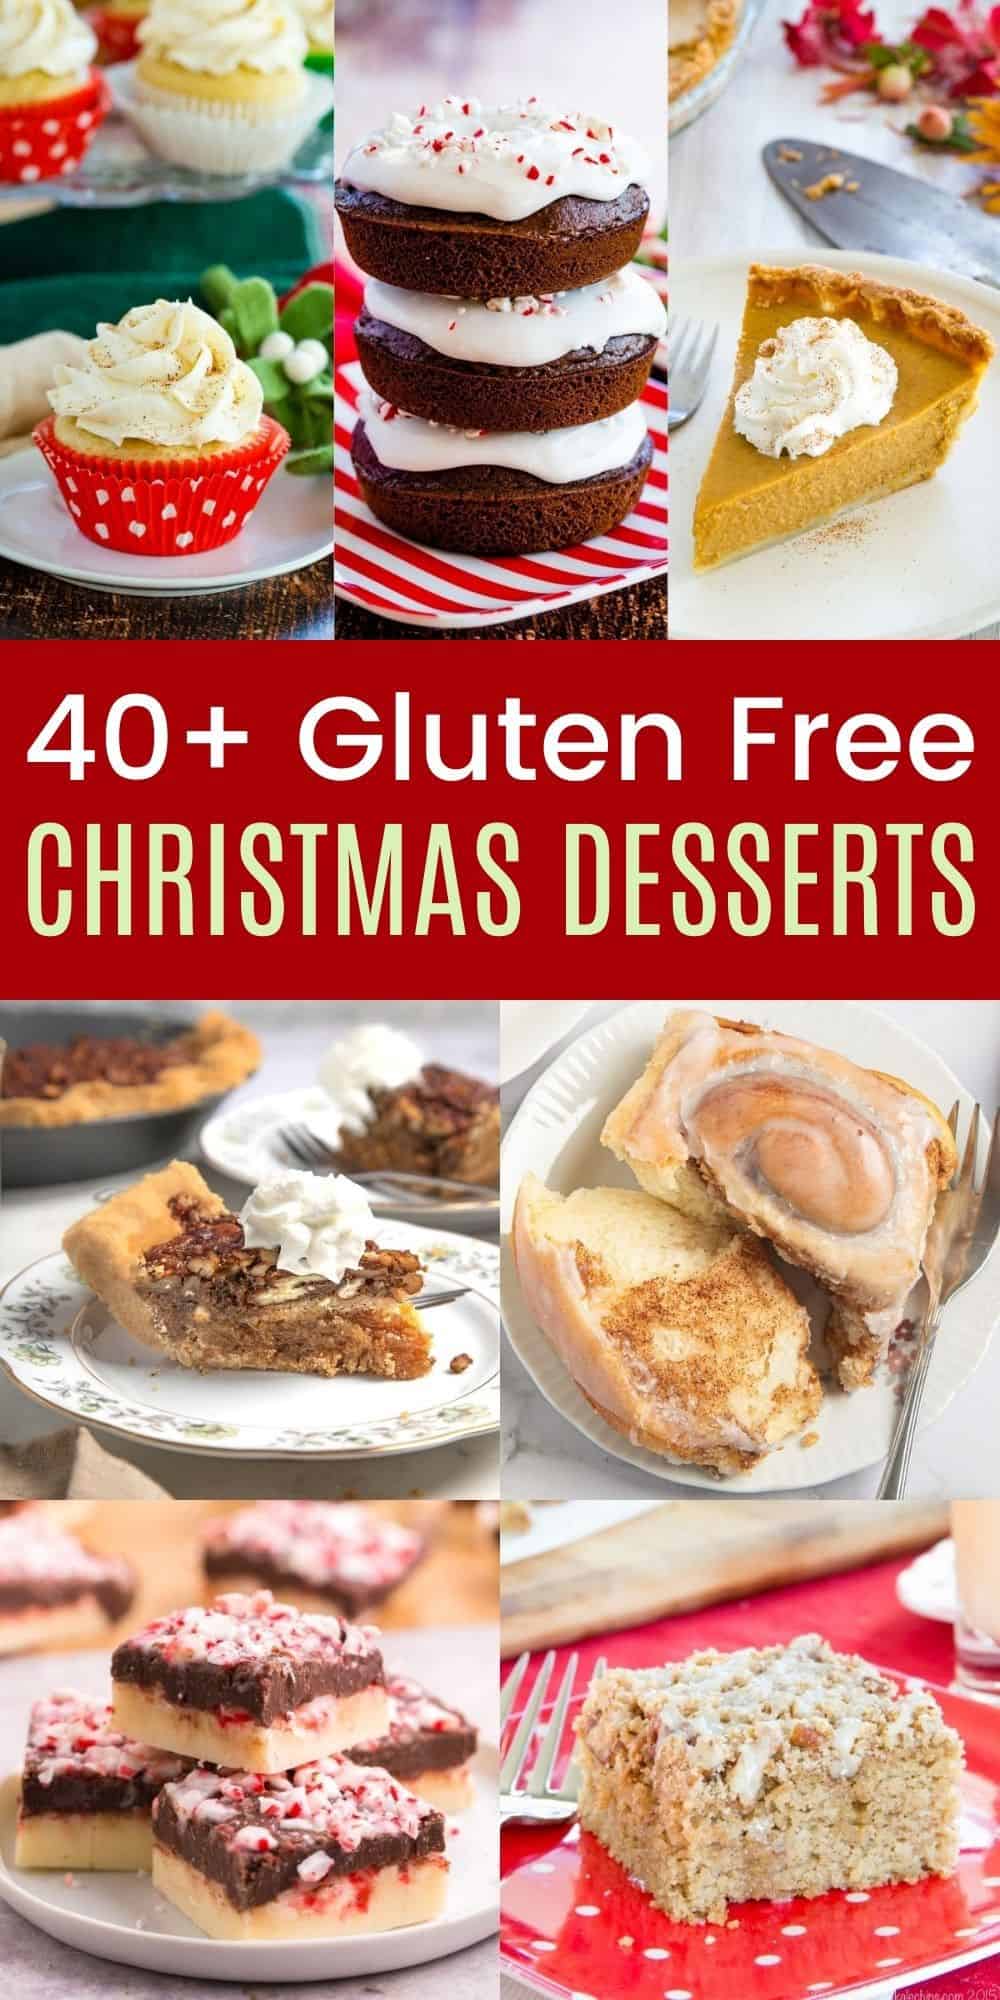 40+ Gluten Free Christmas Desserts That Taste Amazing!